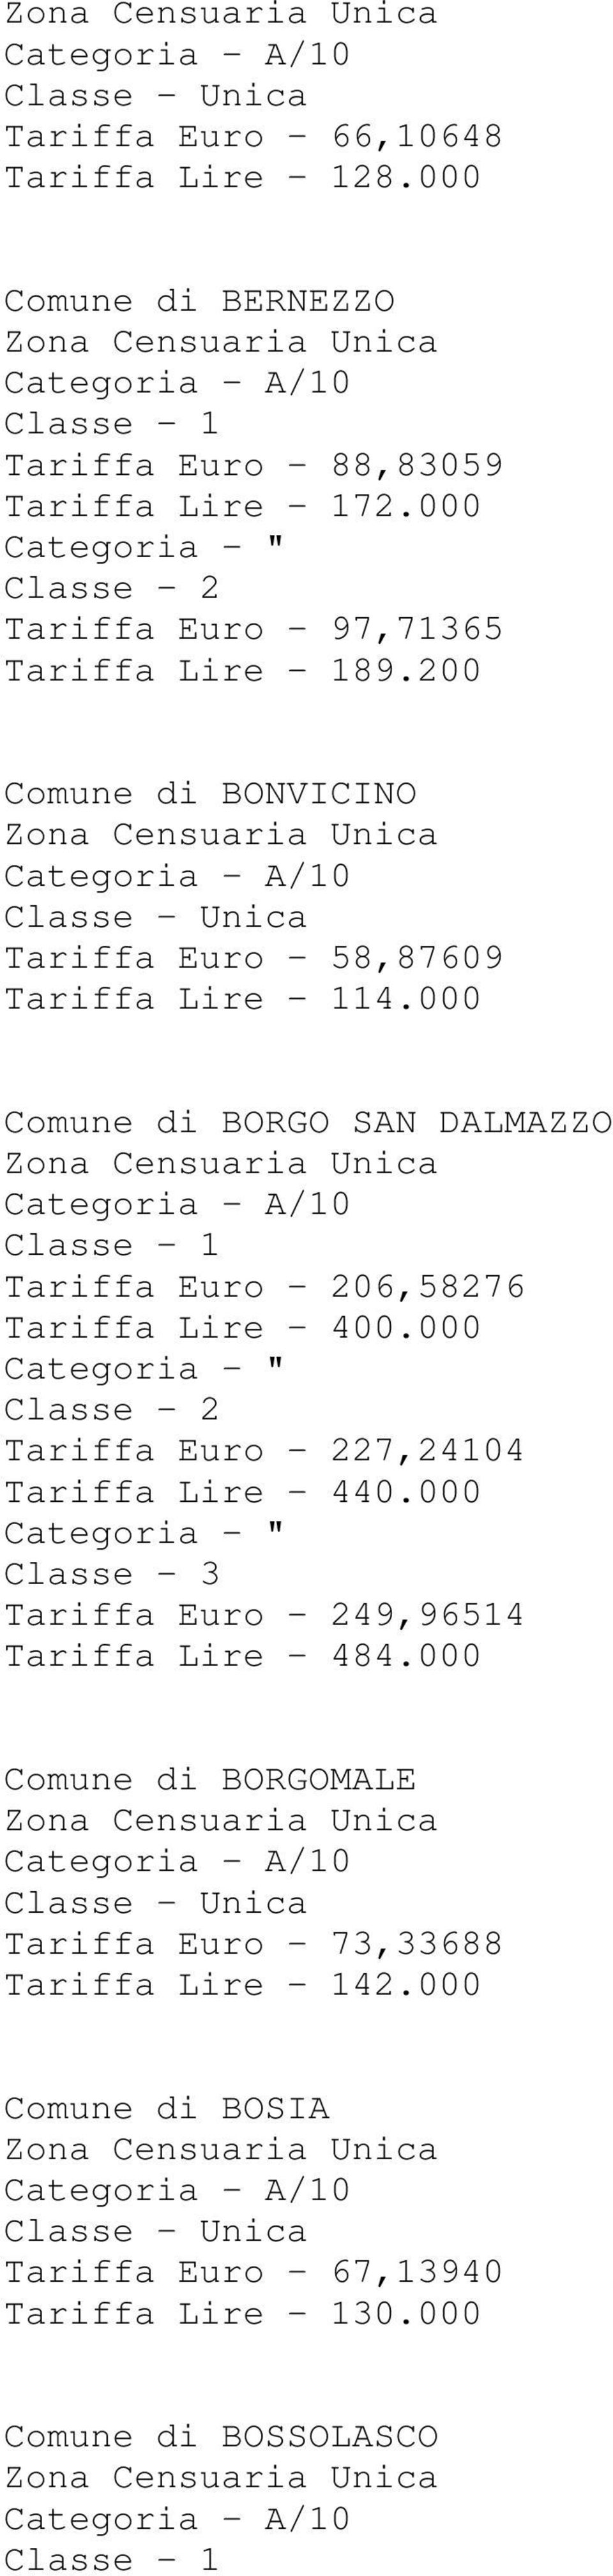 000 Comune di BORGO SAN DALMAZZO Tariffa Euro - 206,58276 Tariffa Lire - 400.000 Tariffa Euro - 227,24104 Tariffa Lire - 440.